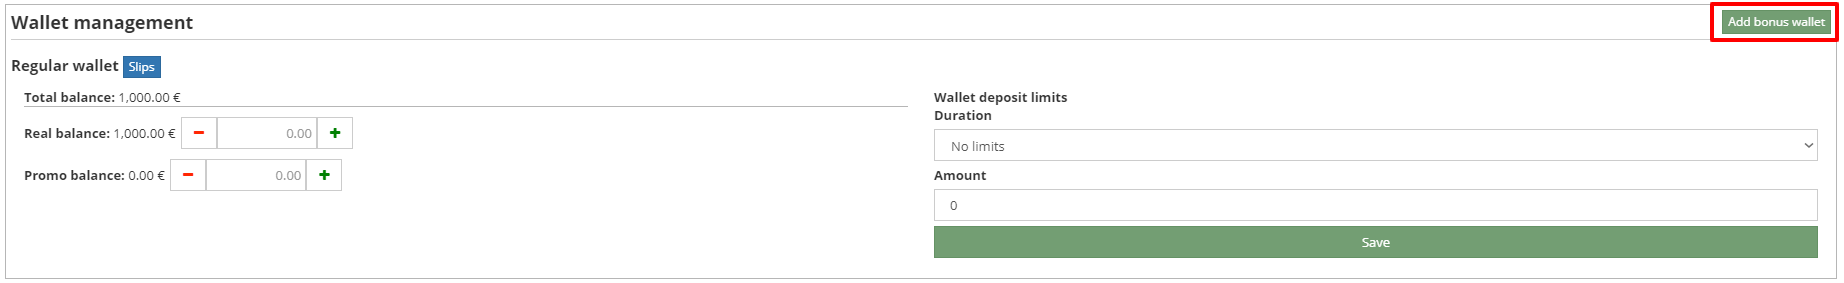 bonus_wallet_button.png